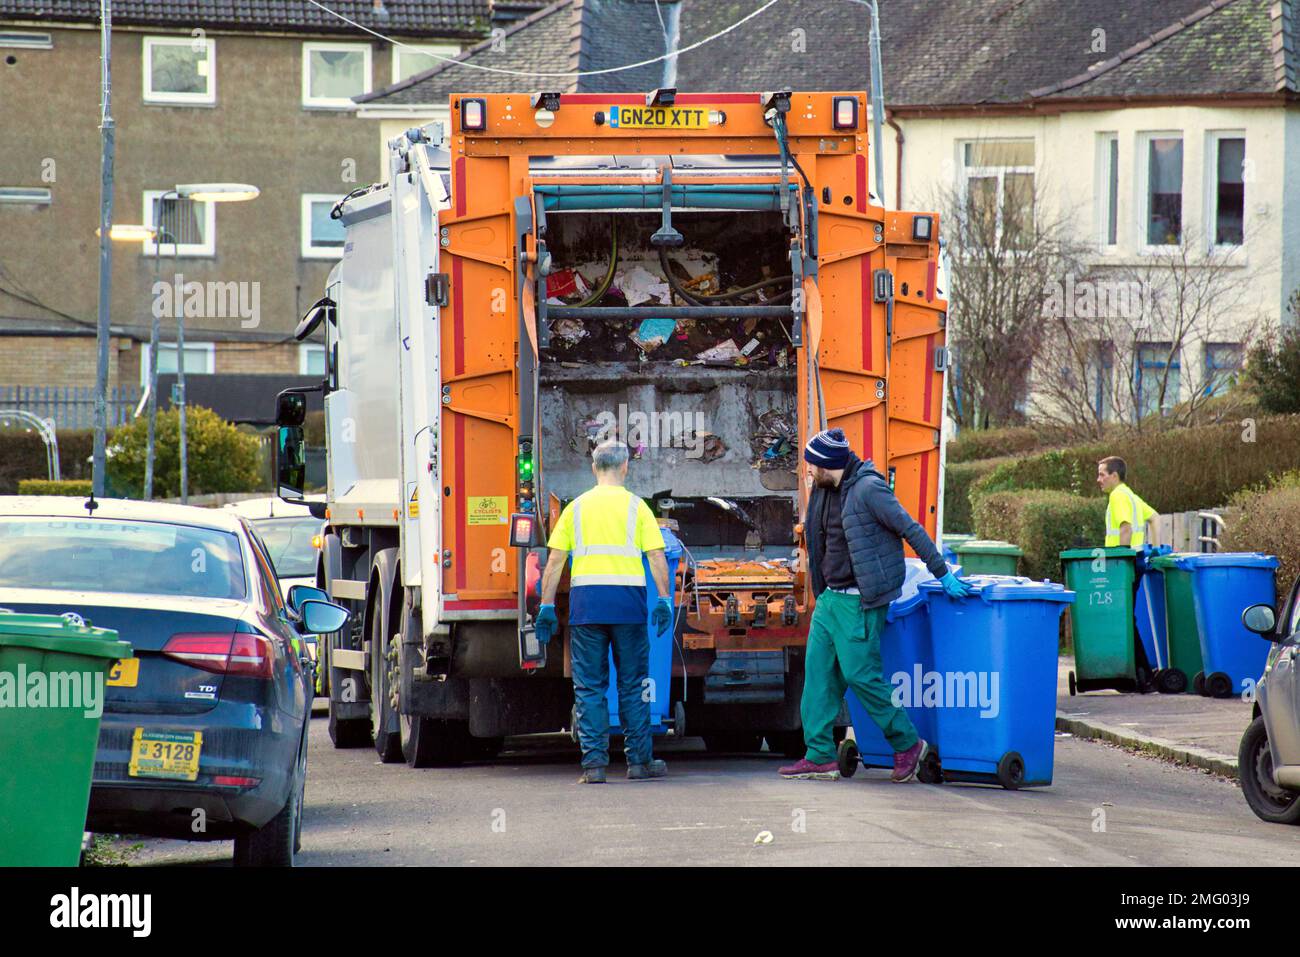 Bin lorry dustmen collecting on suburban street Stock Photo